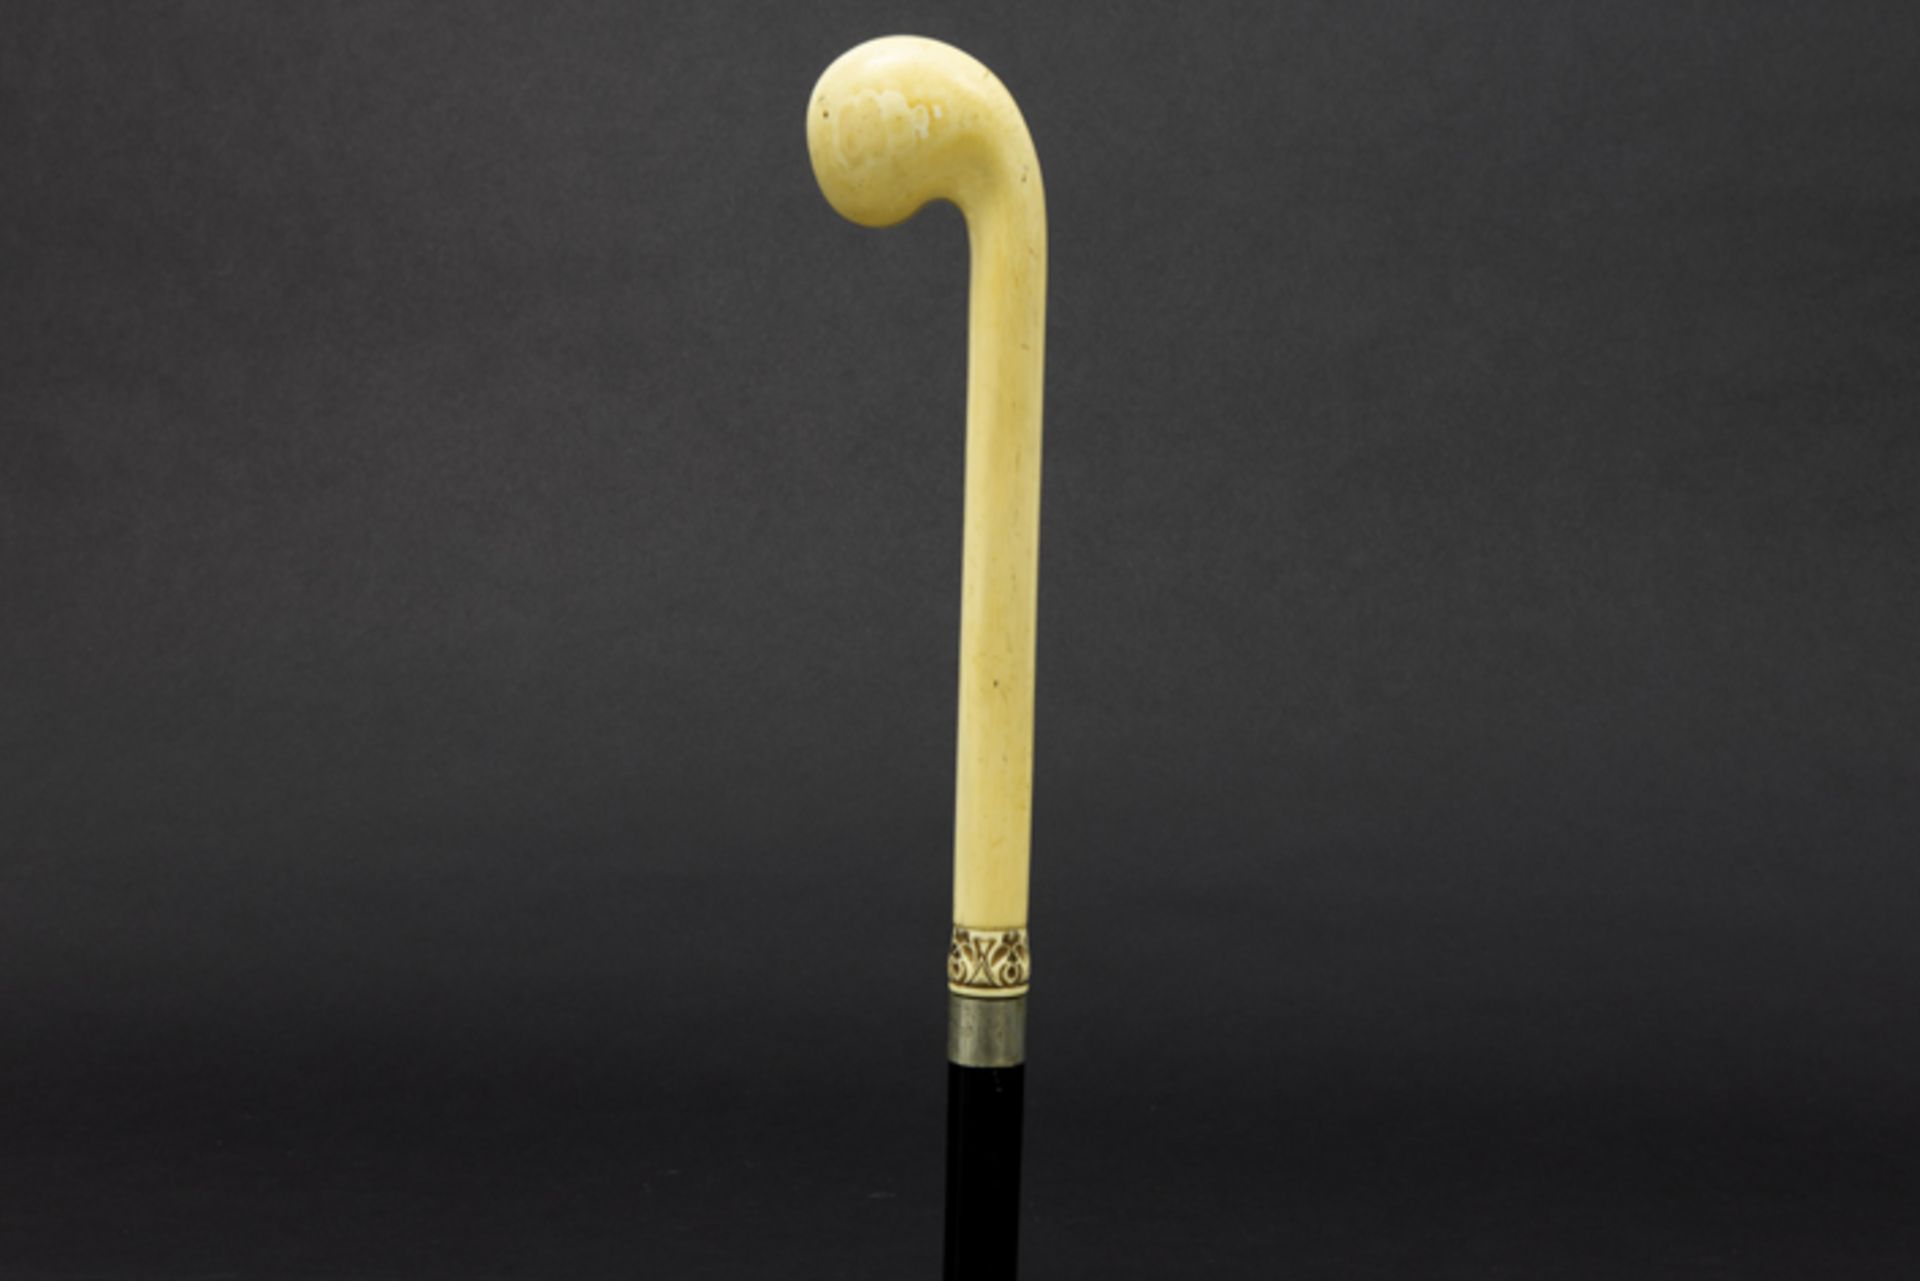 antique walking stick with ivory grip Antieke wandelstok met greep in ivoor - Image 2 of 2